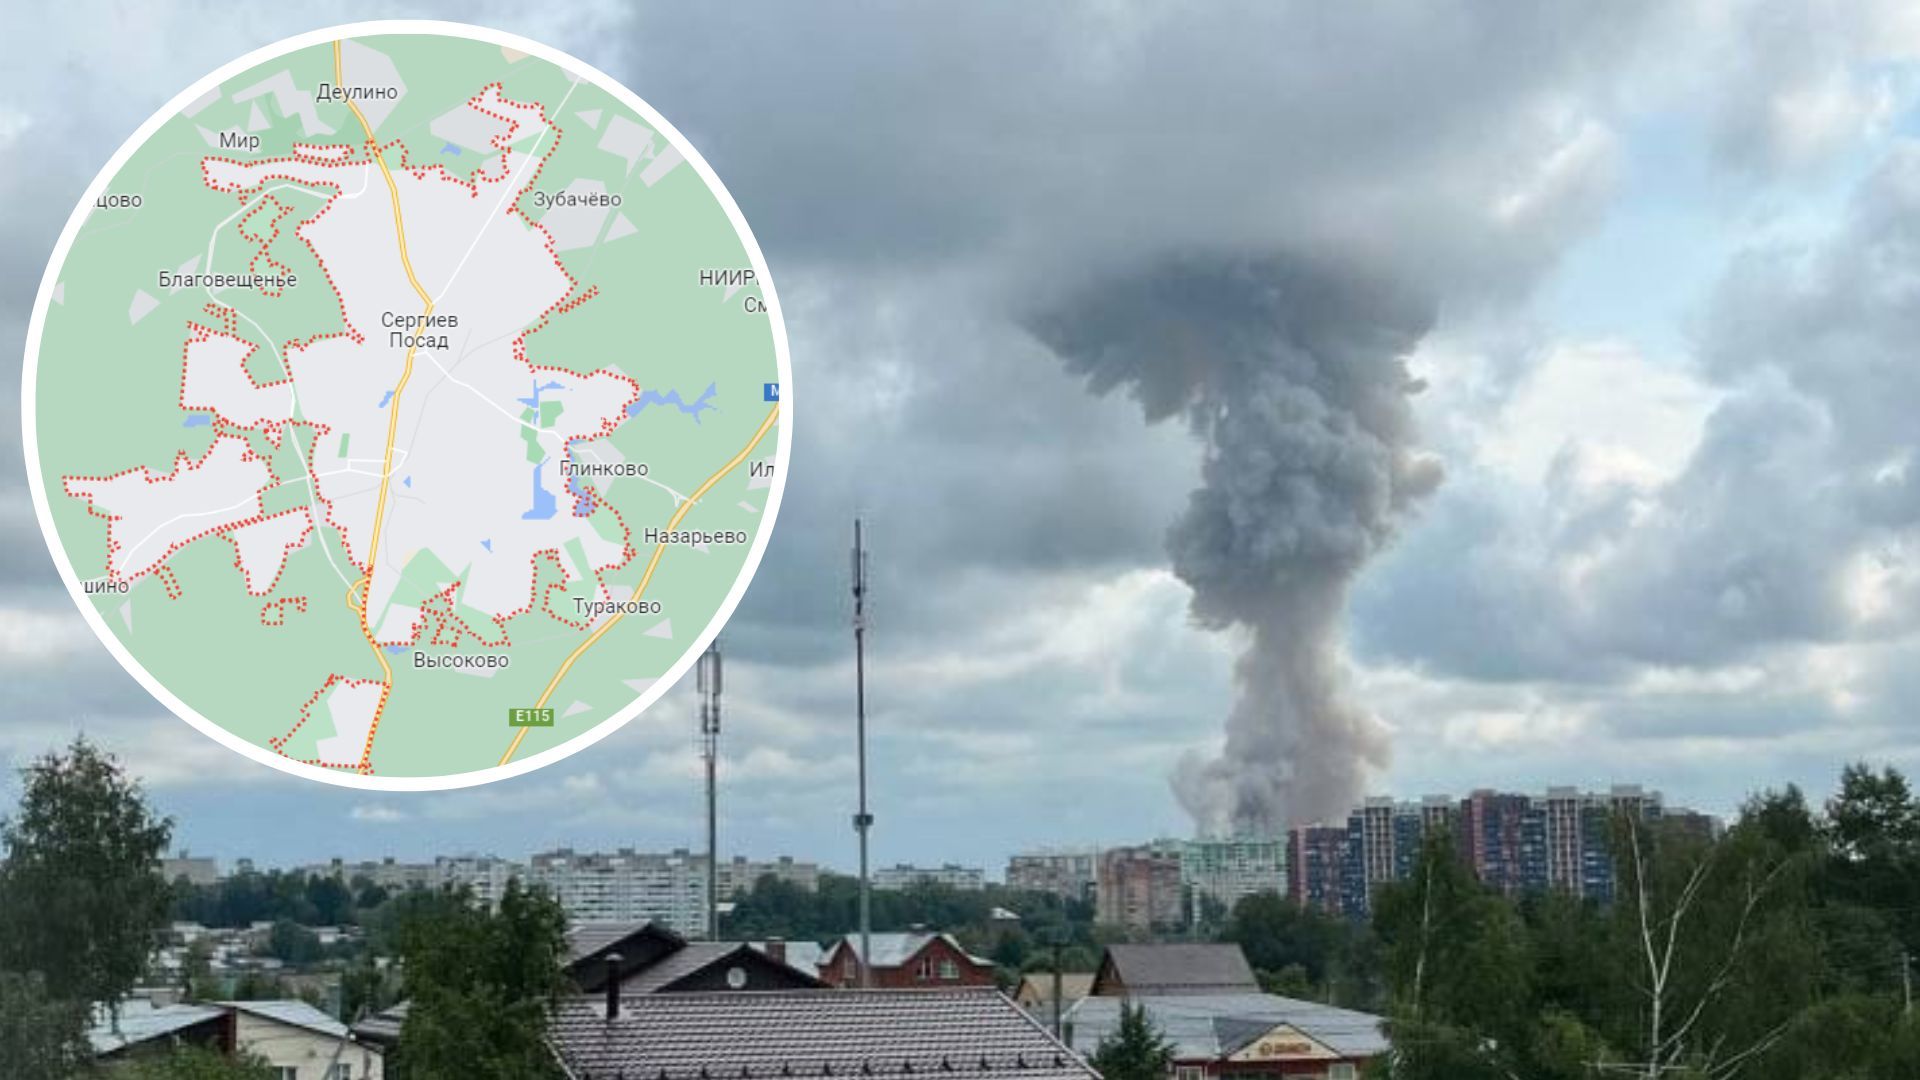 Вблизи Москвы произошел сильный взрыв 9 августа